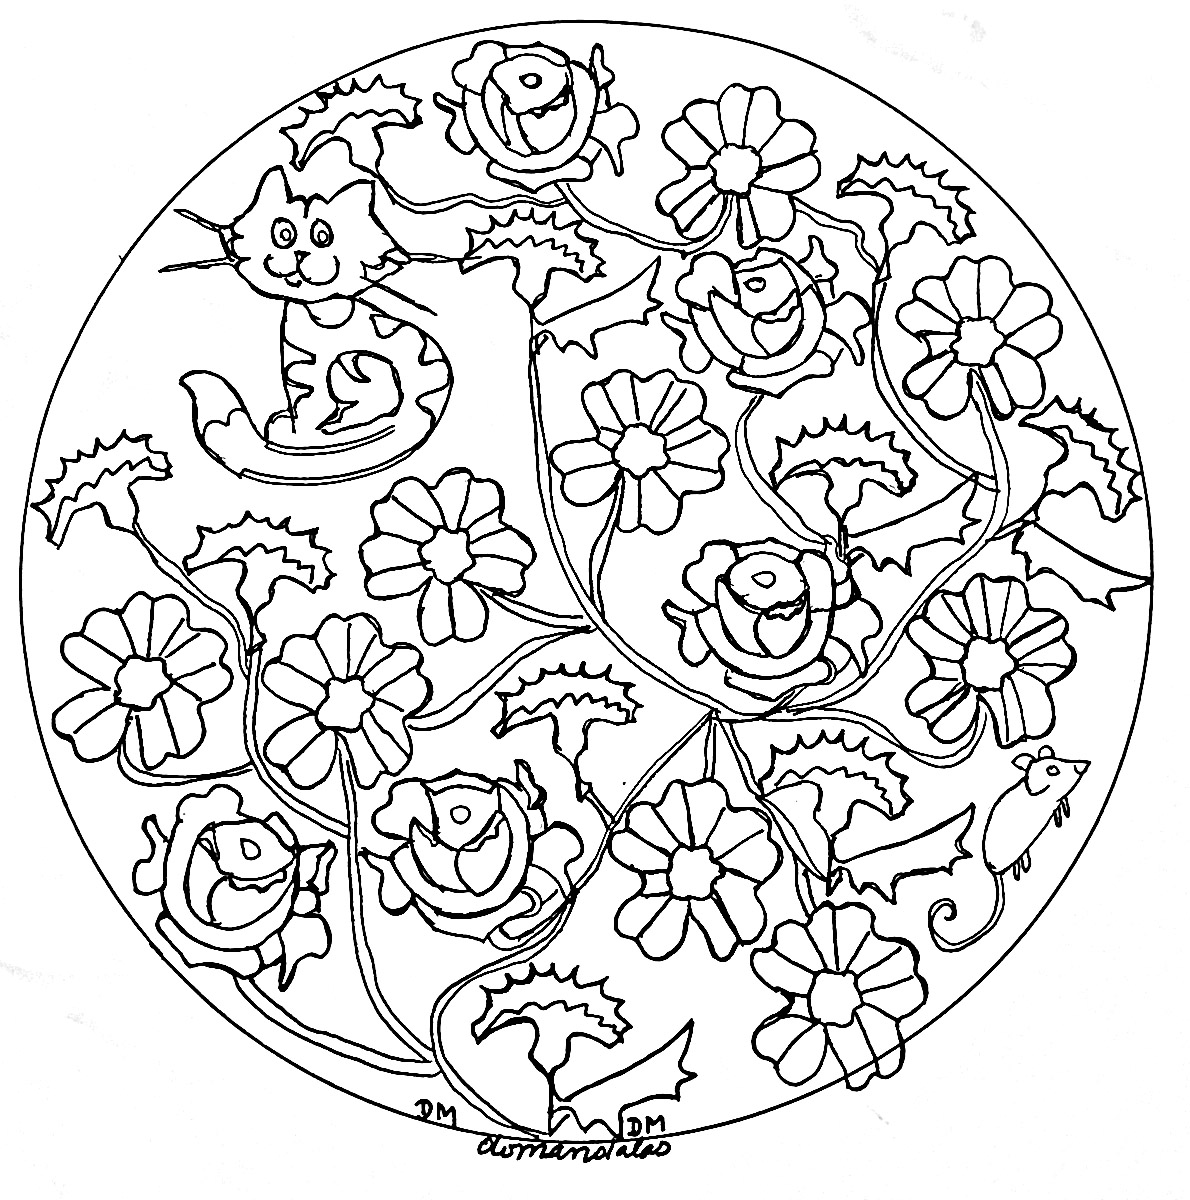 Pflanzliche Elemente passen oft sehr gut zu Mandalas, so auch bei diesem eleganten Ausmalbild. Die Blumen sind sehr realistisch und handgezeichnet.